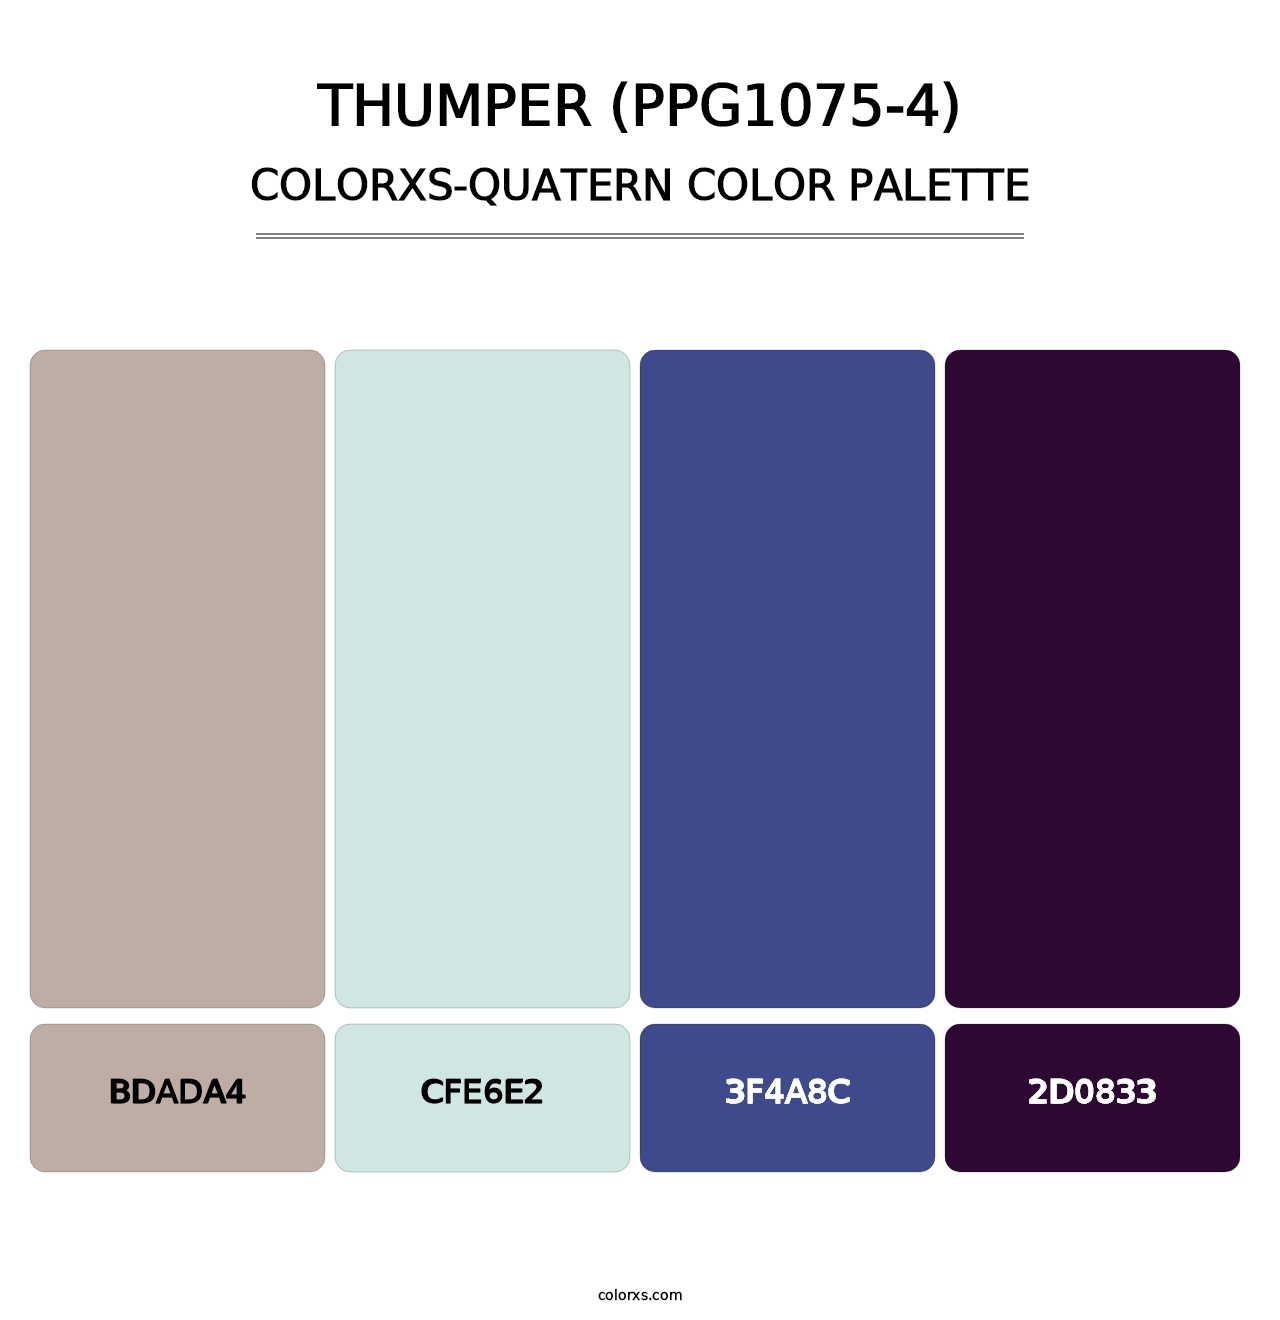 Thumper (PPG1075-4) - Colorxs Quatern Palette